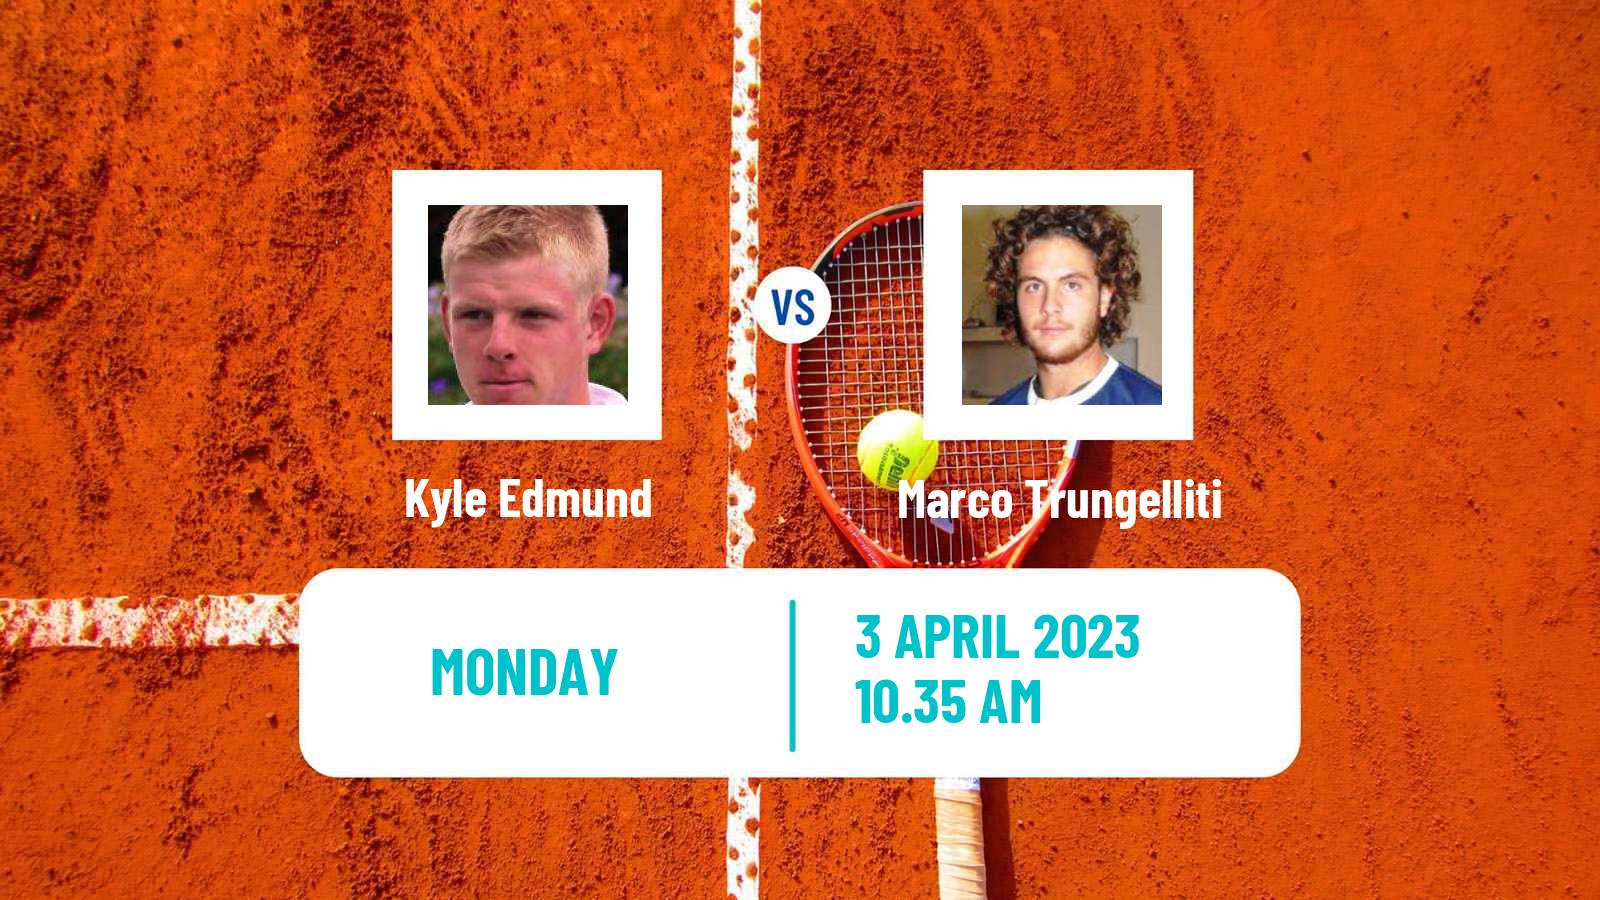 Tennis ATP Challenger Kyle Edmund - Marco Trungelliti